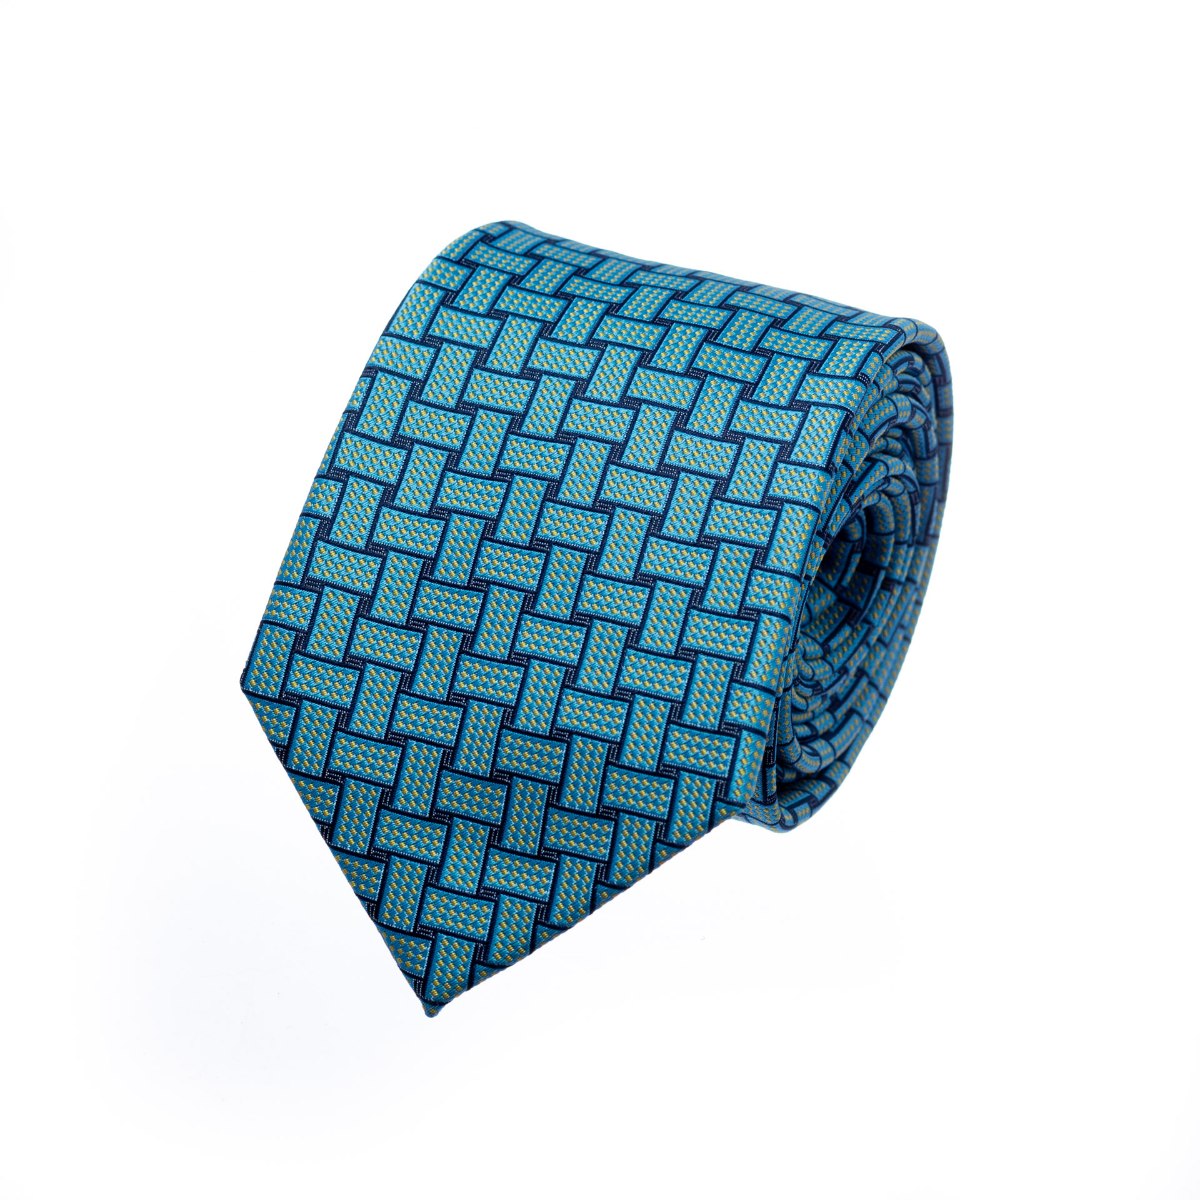 עניבה שתי וערב תכלת כחול